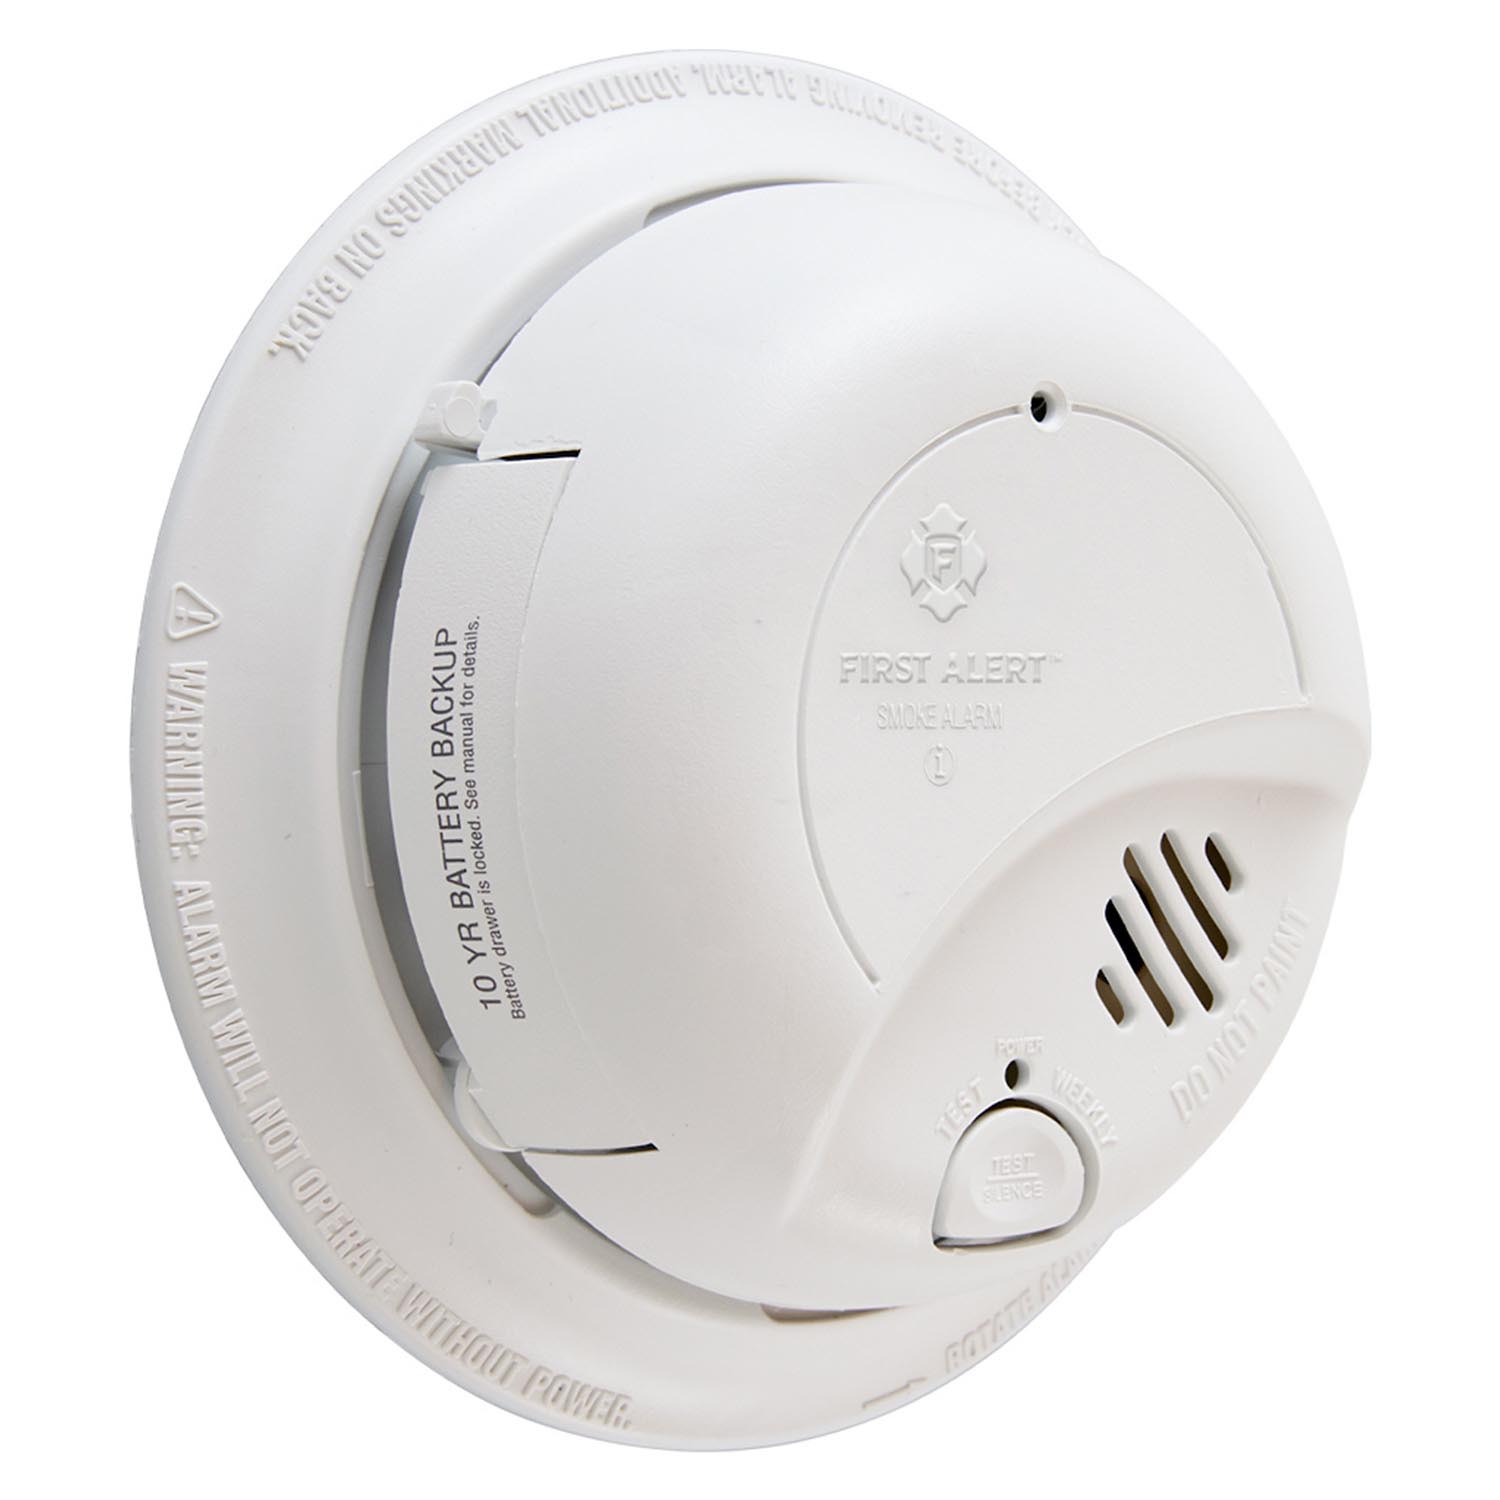 Smoke alarm detector independent ceiling smoke sensor fire sound alarm home B LD